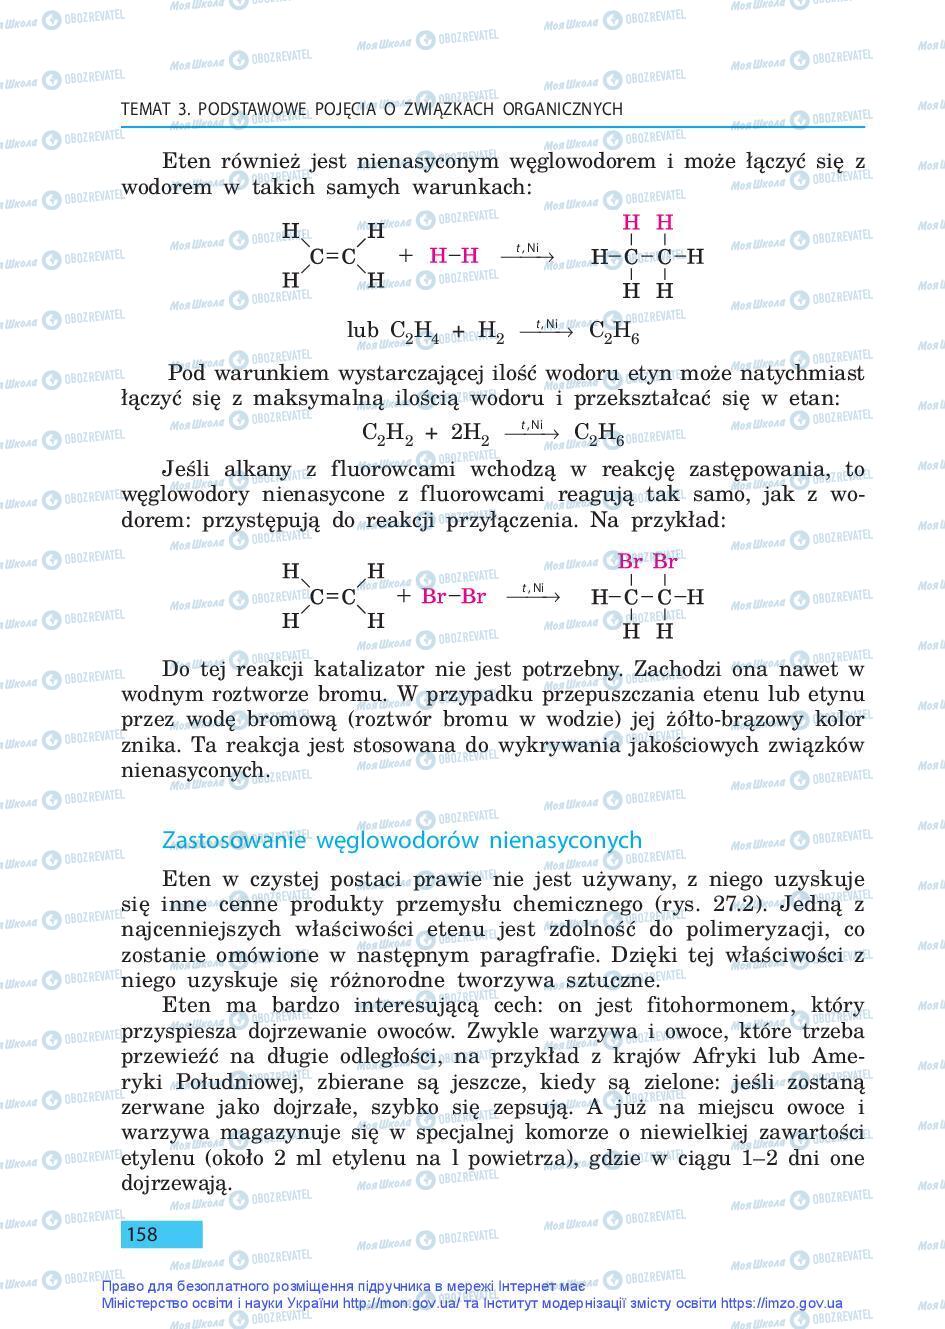 Підручники Хімія 9 клас сторінка 158